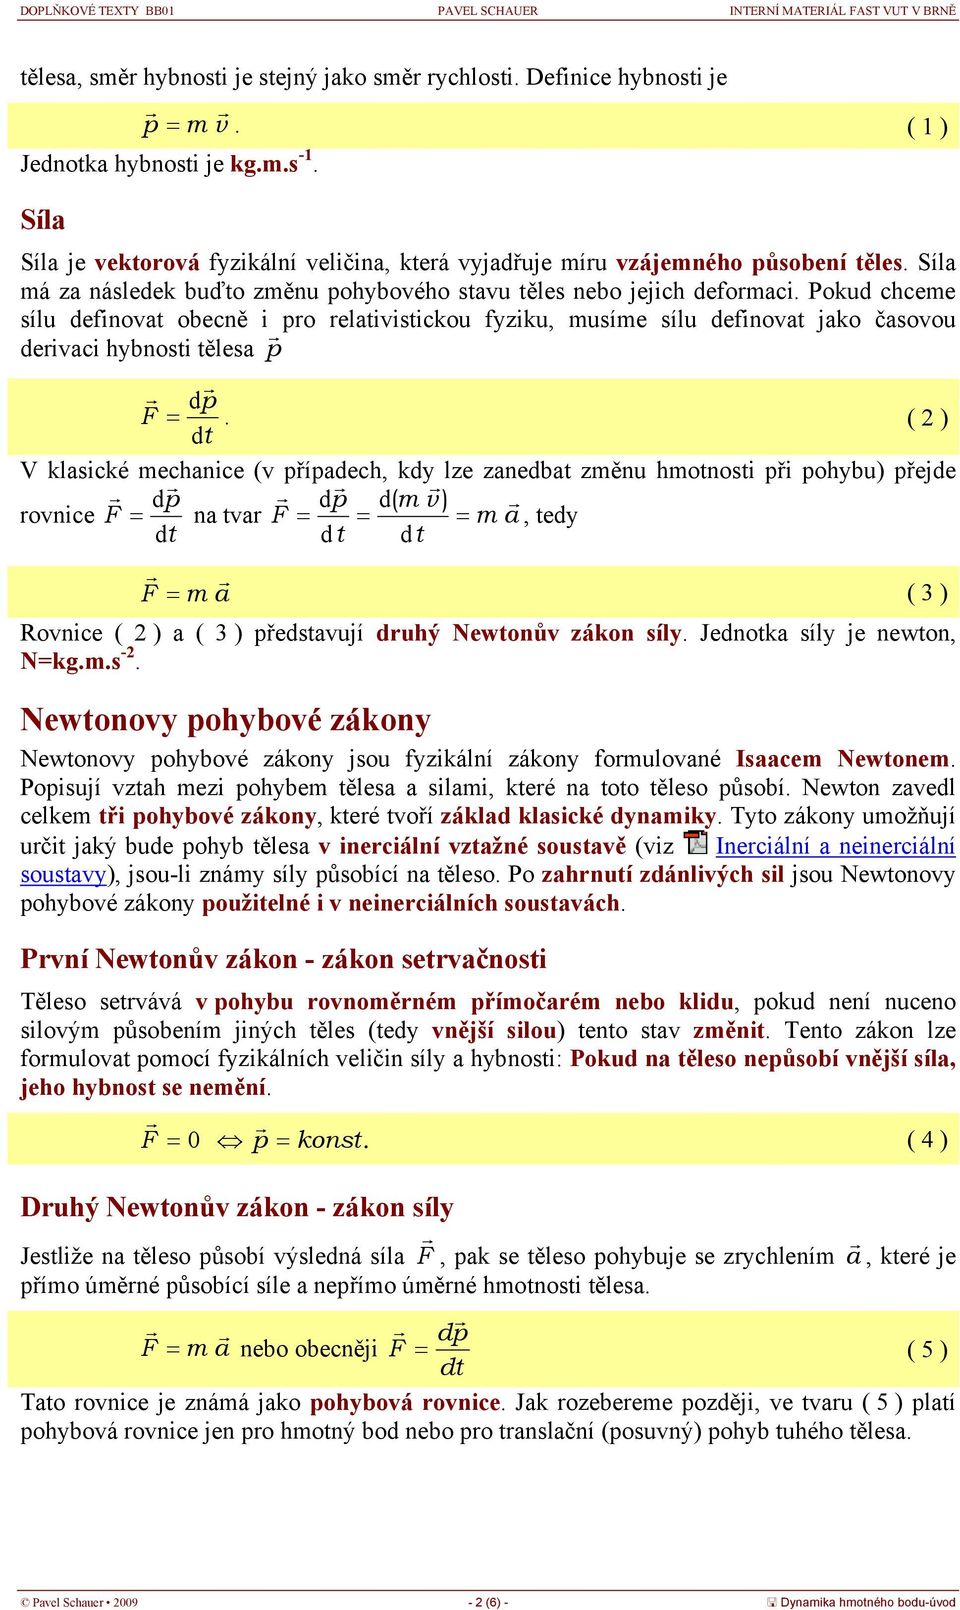 klasické mechanice (v případech, kd lze zanedba změnu hmonosi při pohbu) přejde dp d p d( m v ) rovnice F na var F m a, ed F m a ( 3 ) Rovnice ( ) a ( 3 ) předsavují druhý Newonův zákon síl Jednoka